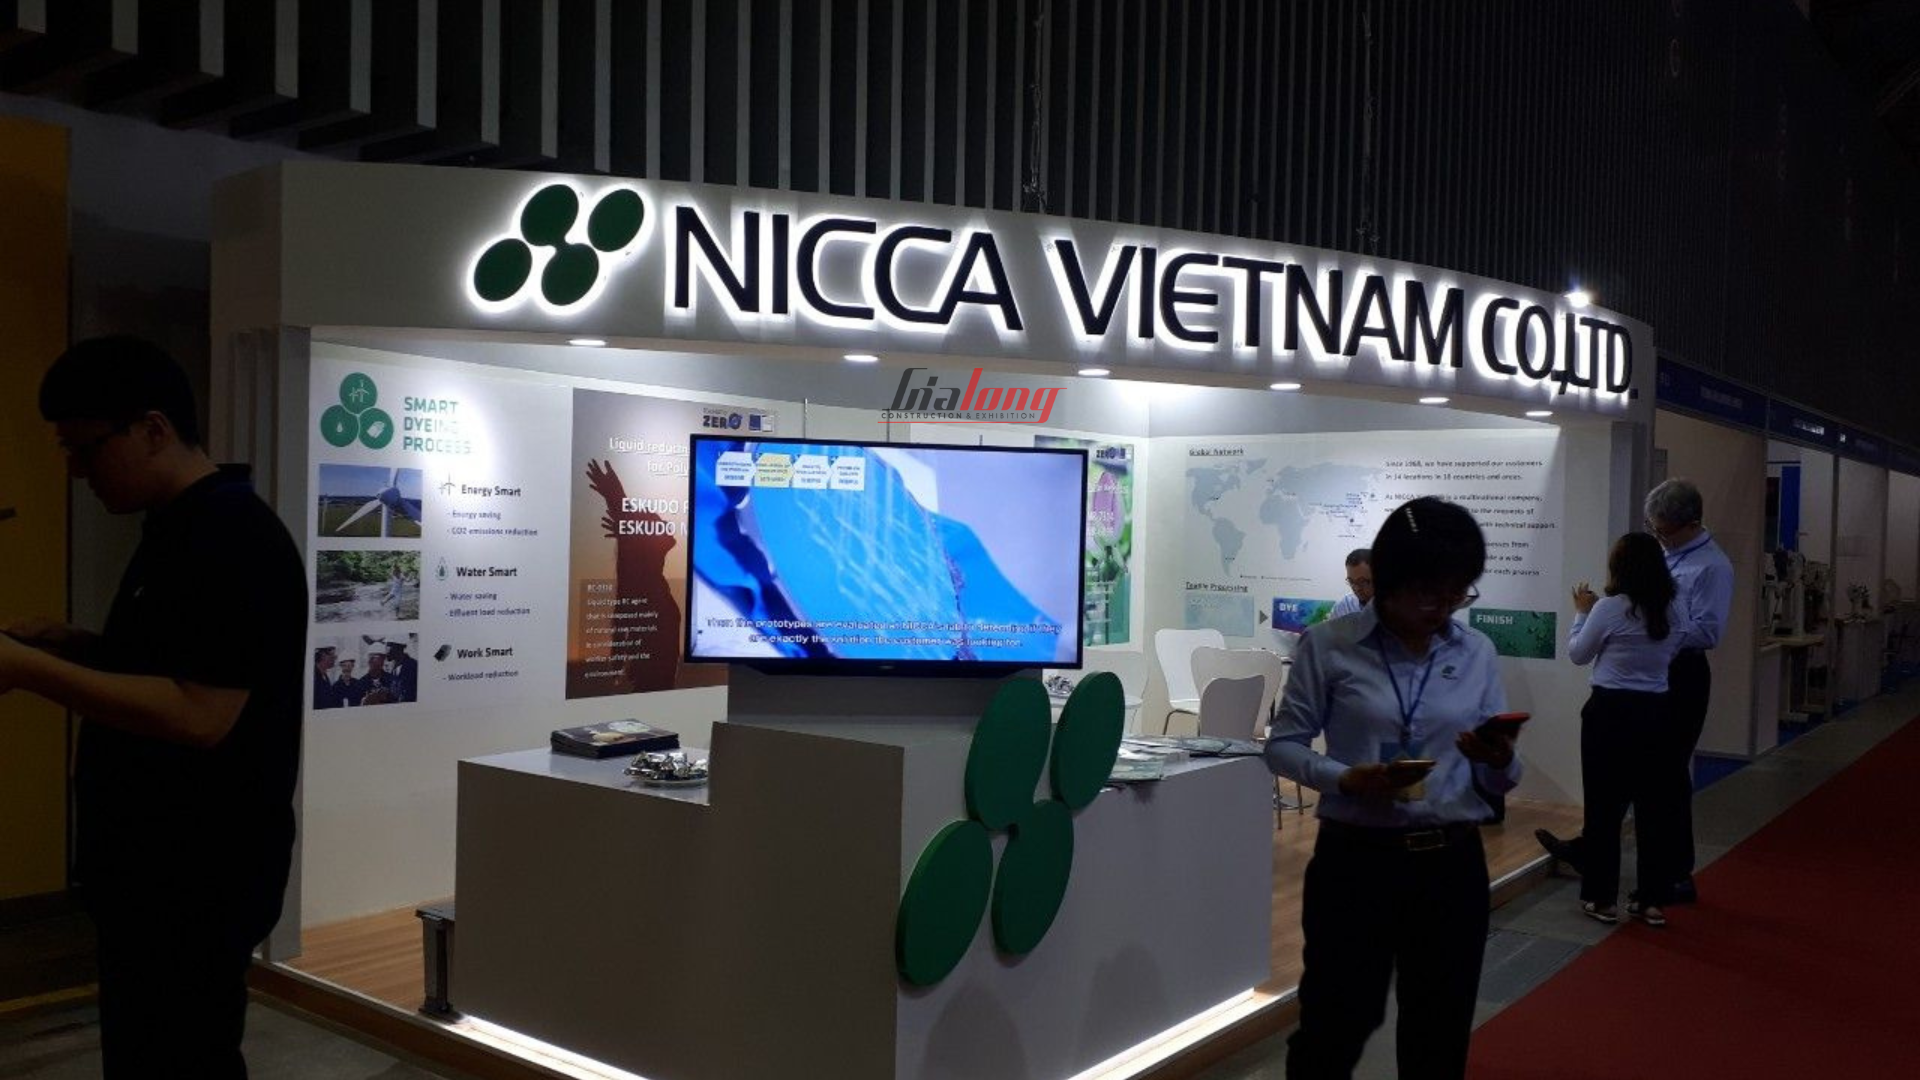 Nicca Vietnam - Gian hàng được hoàn thiện bởi Gia Long - The booth was completed by Gia Long